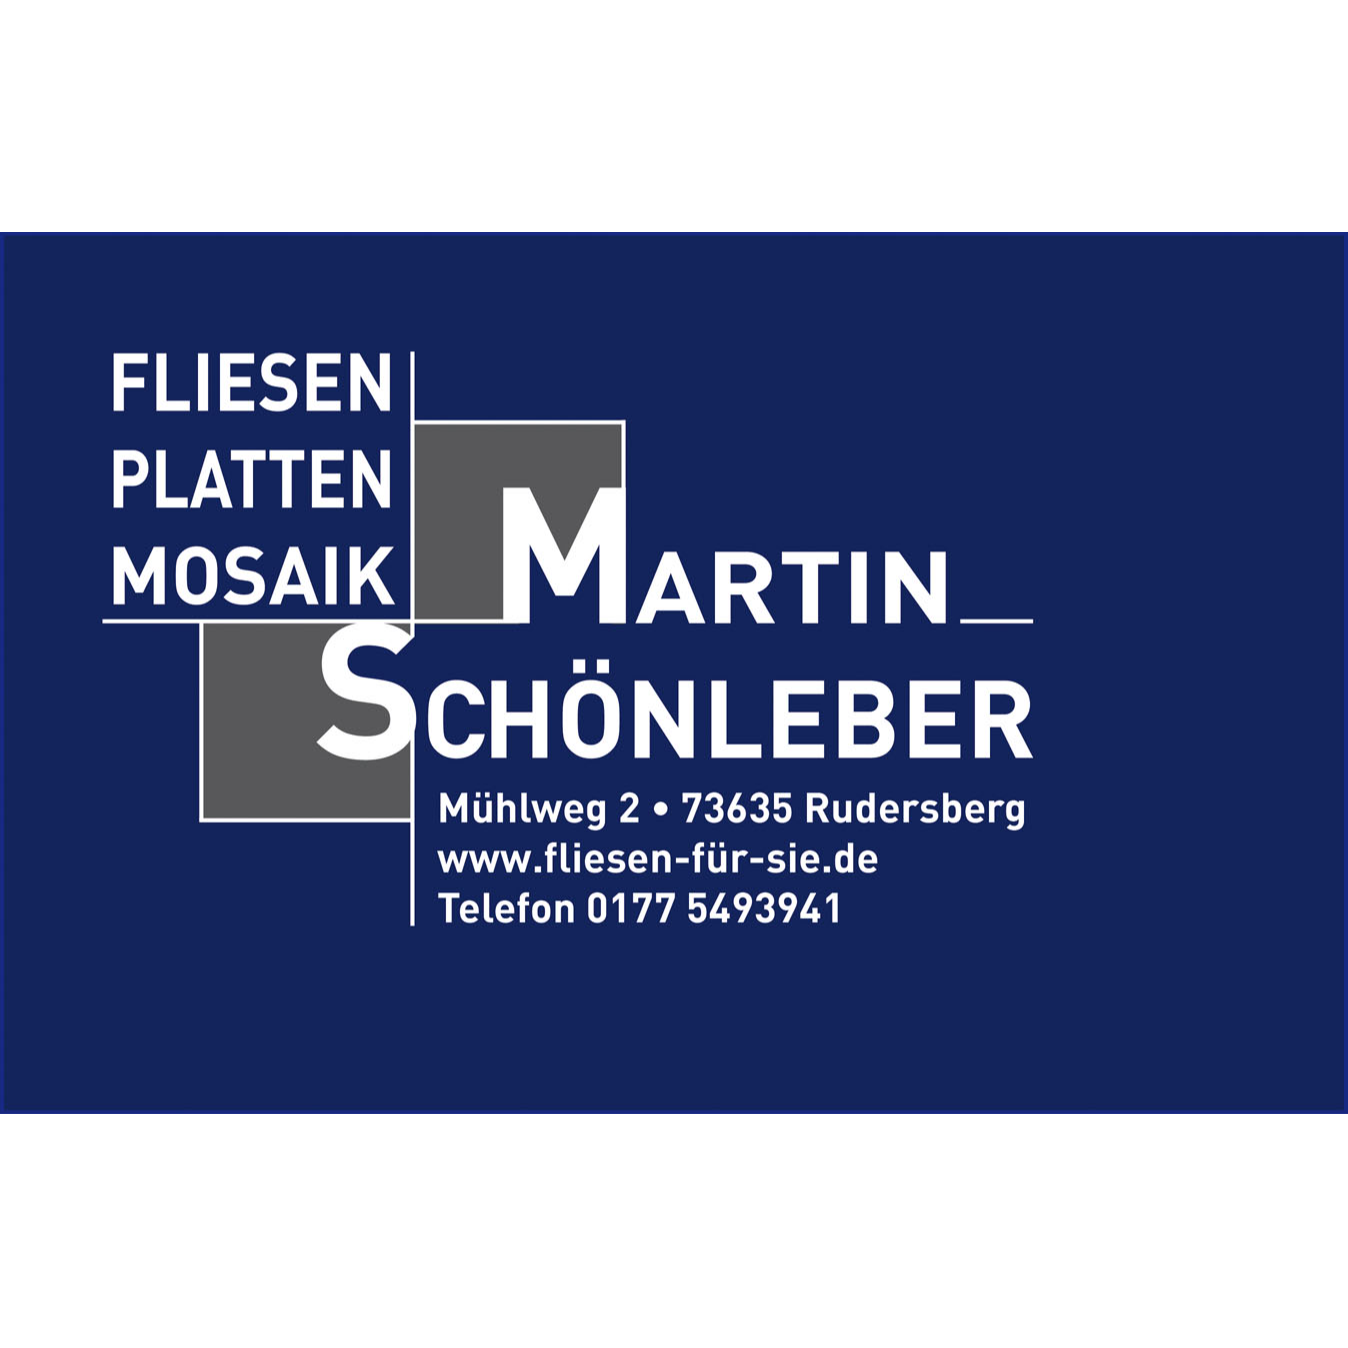 Martin Schönleber Fliesen- und Plattenleger Logo